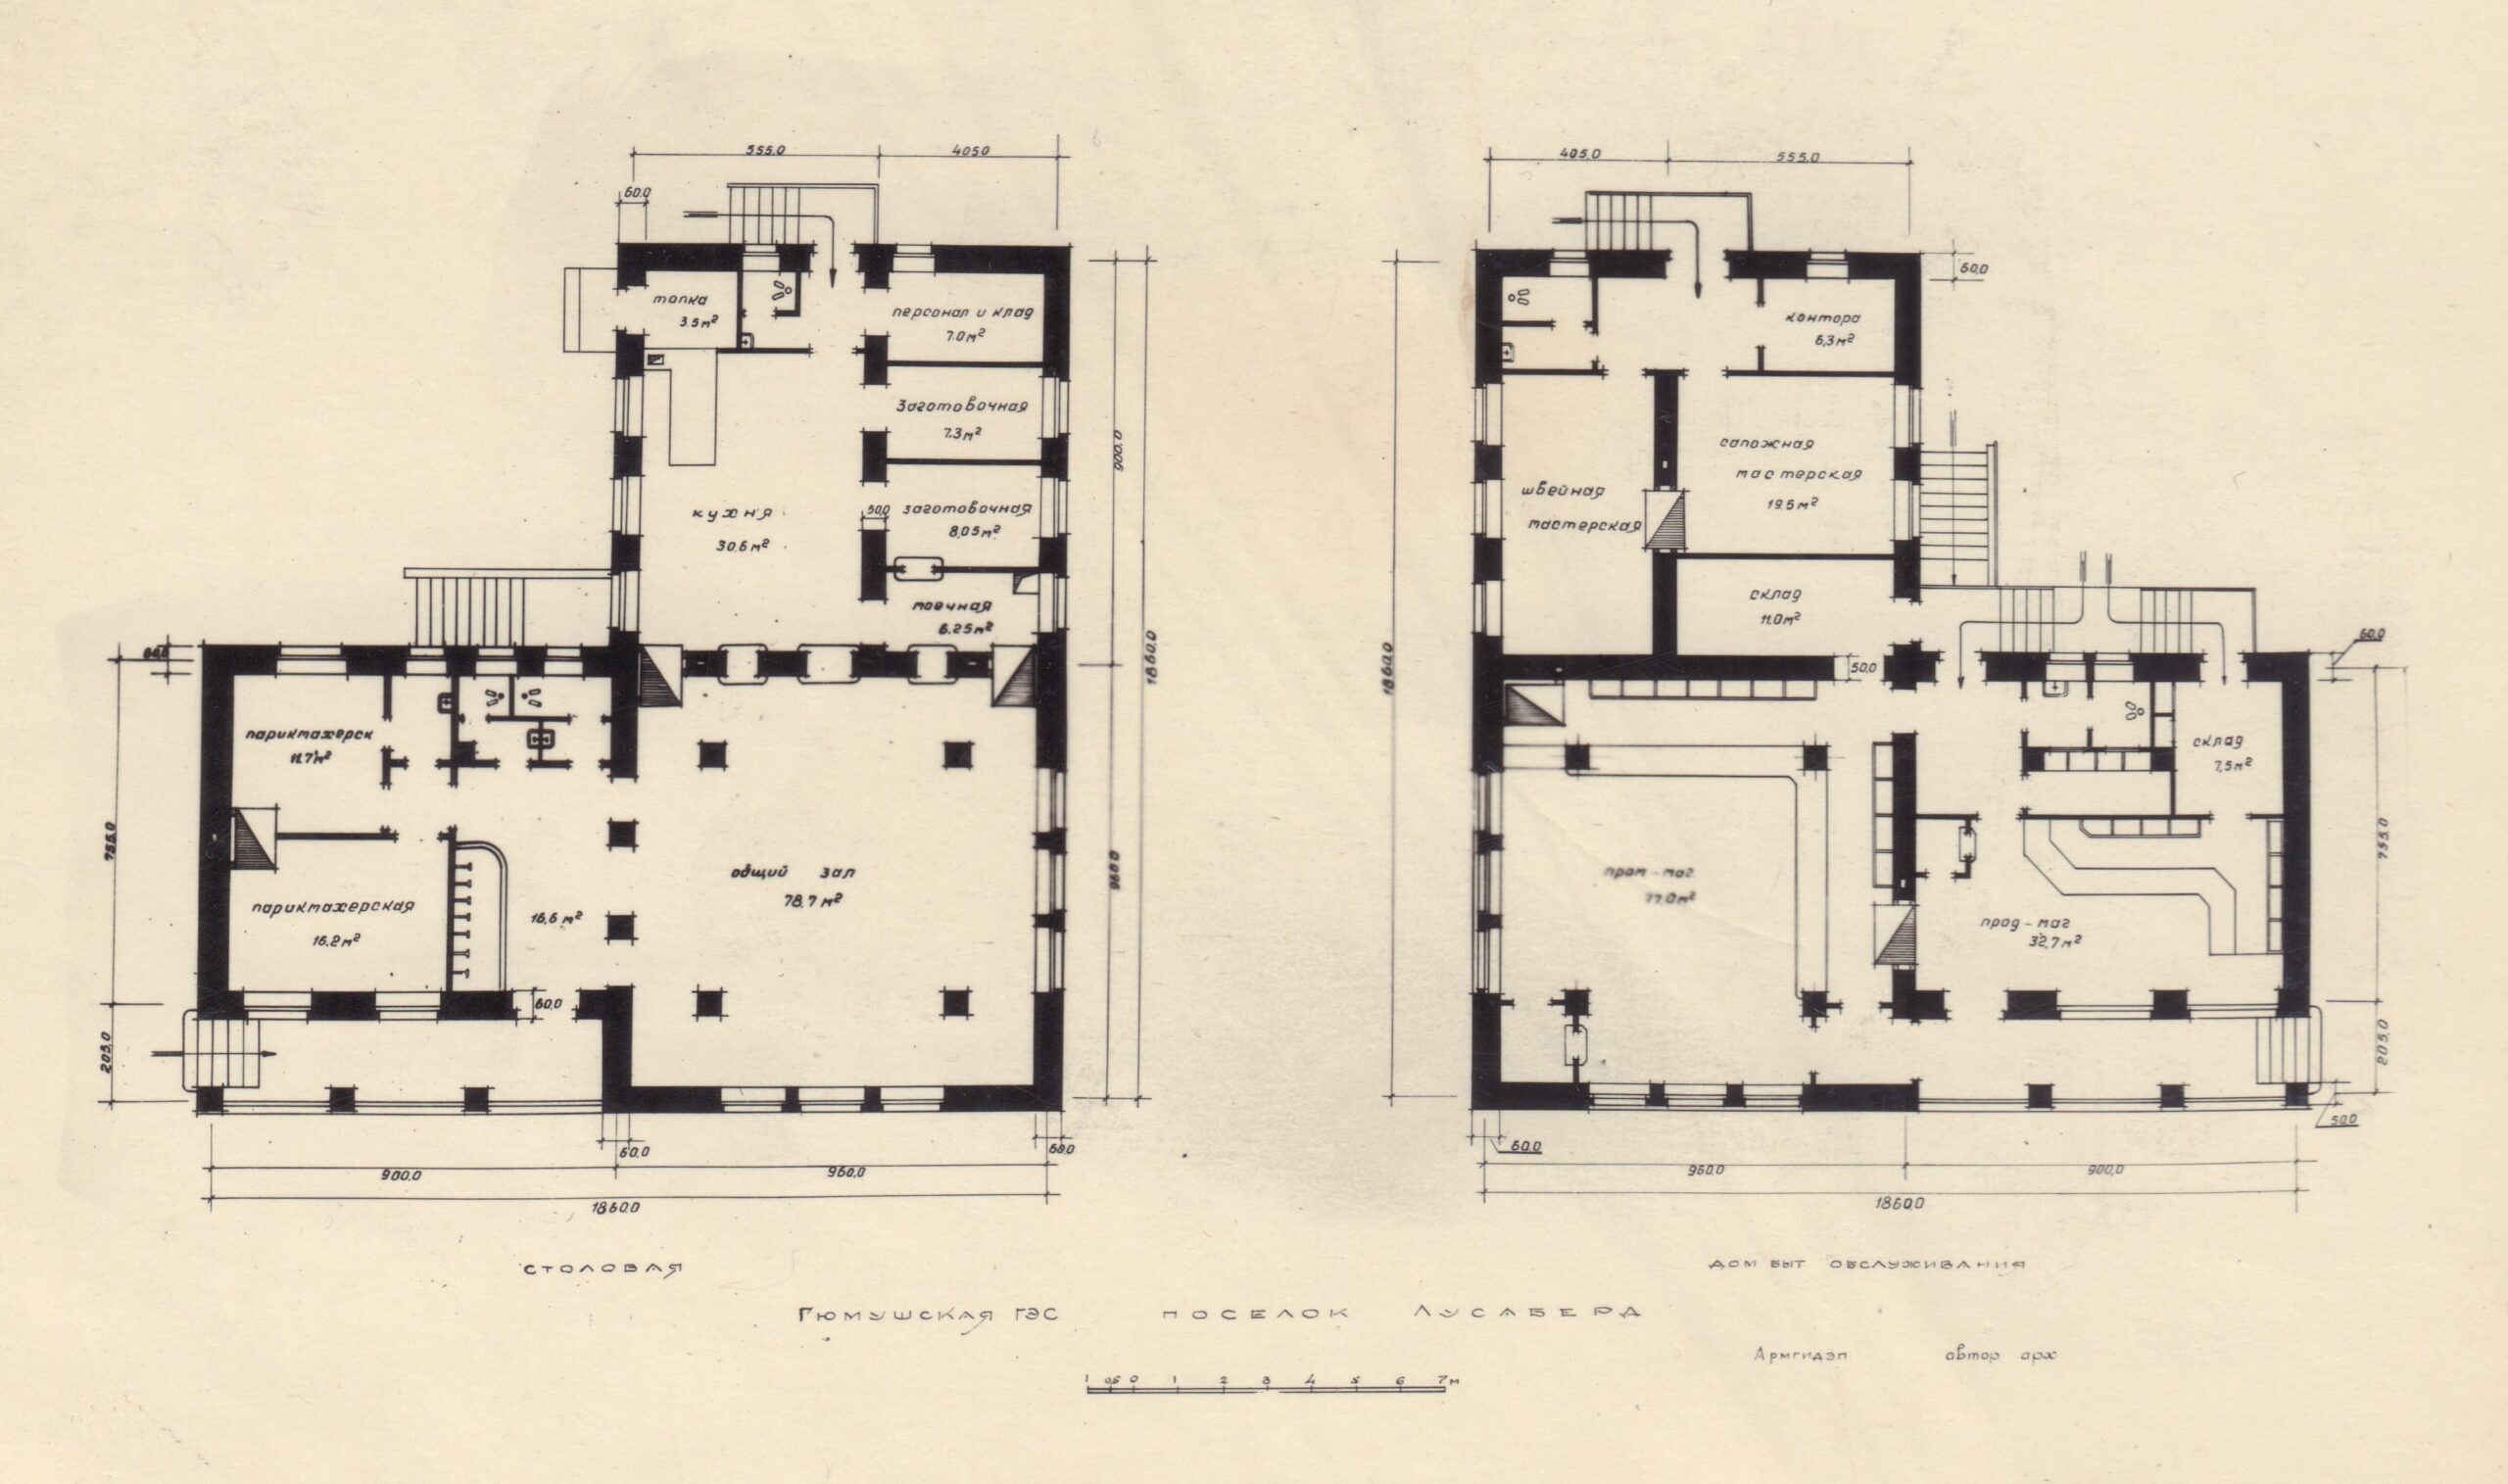 Կենցաղ սպասարկման տան (գծագրի աջ կողմում) և ճաշարանի հատակագիծը